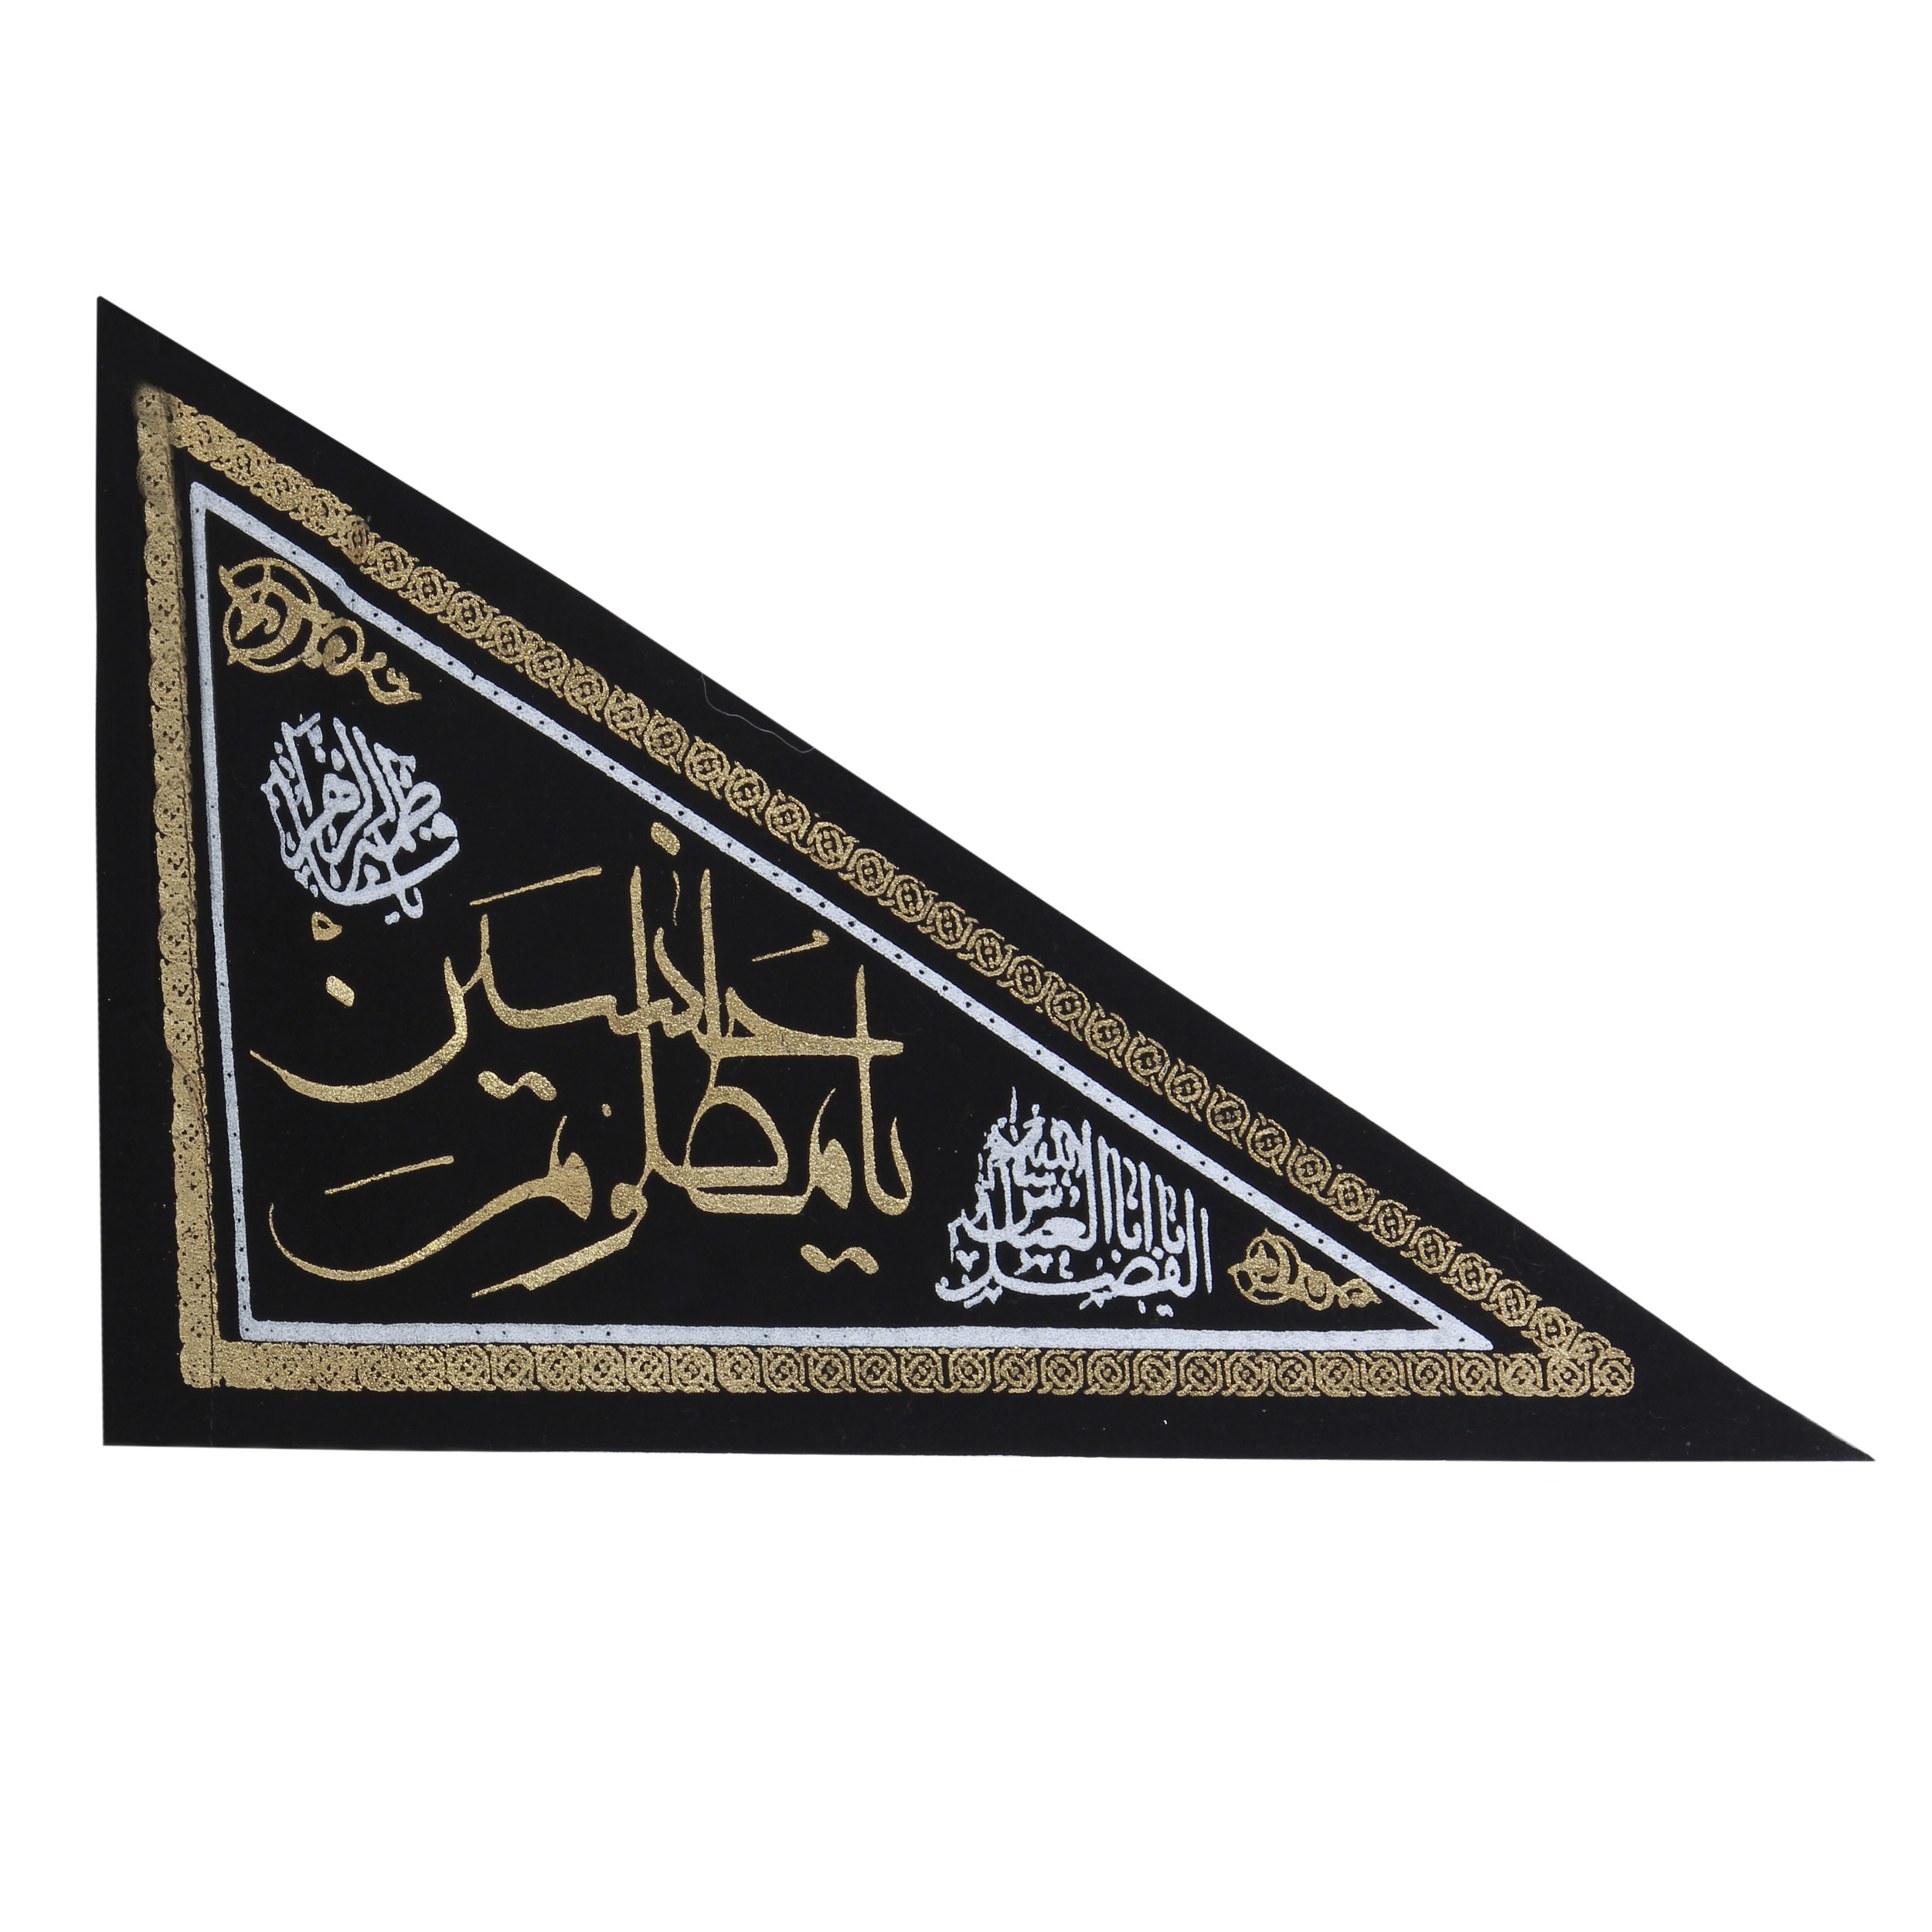    پرچم طرح یا حسین کد PAR-045